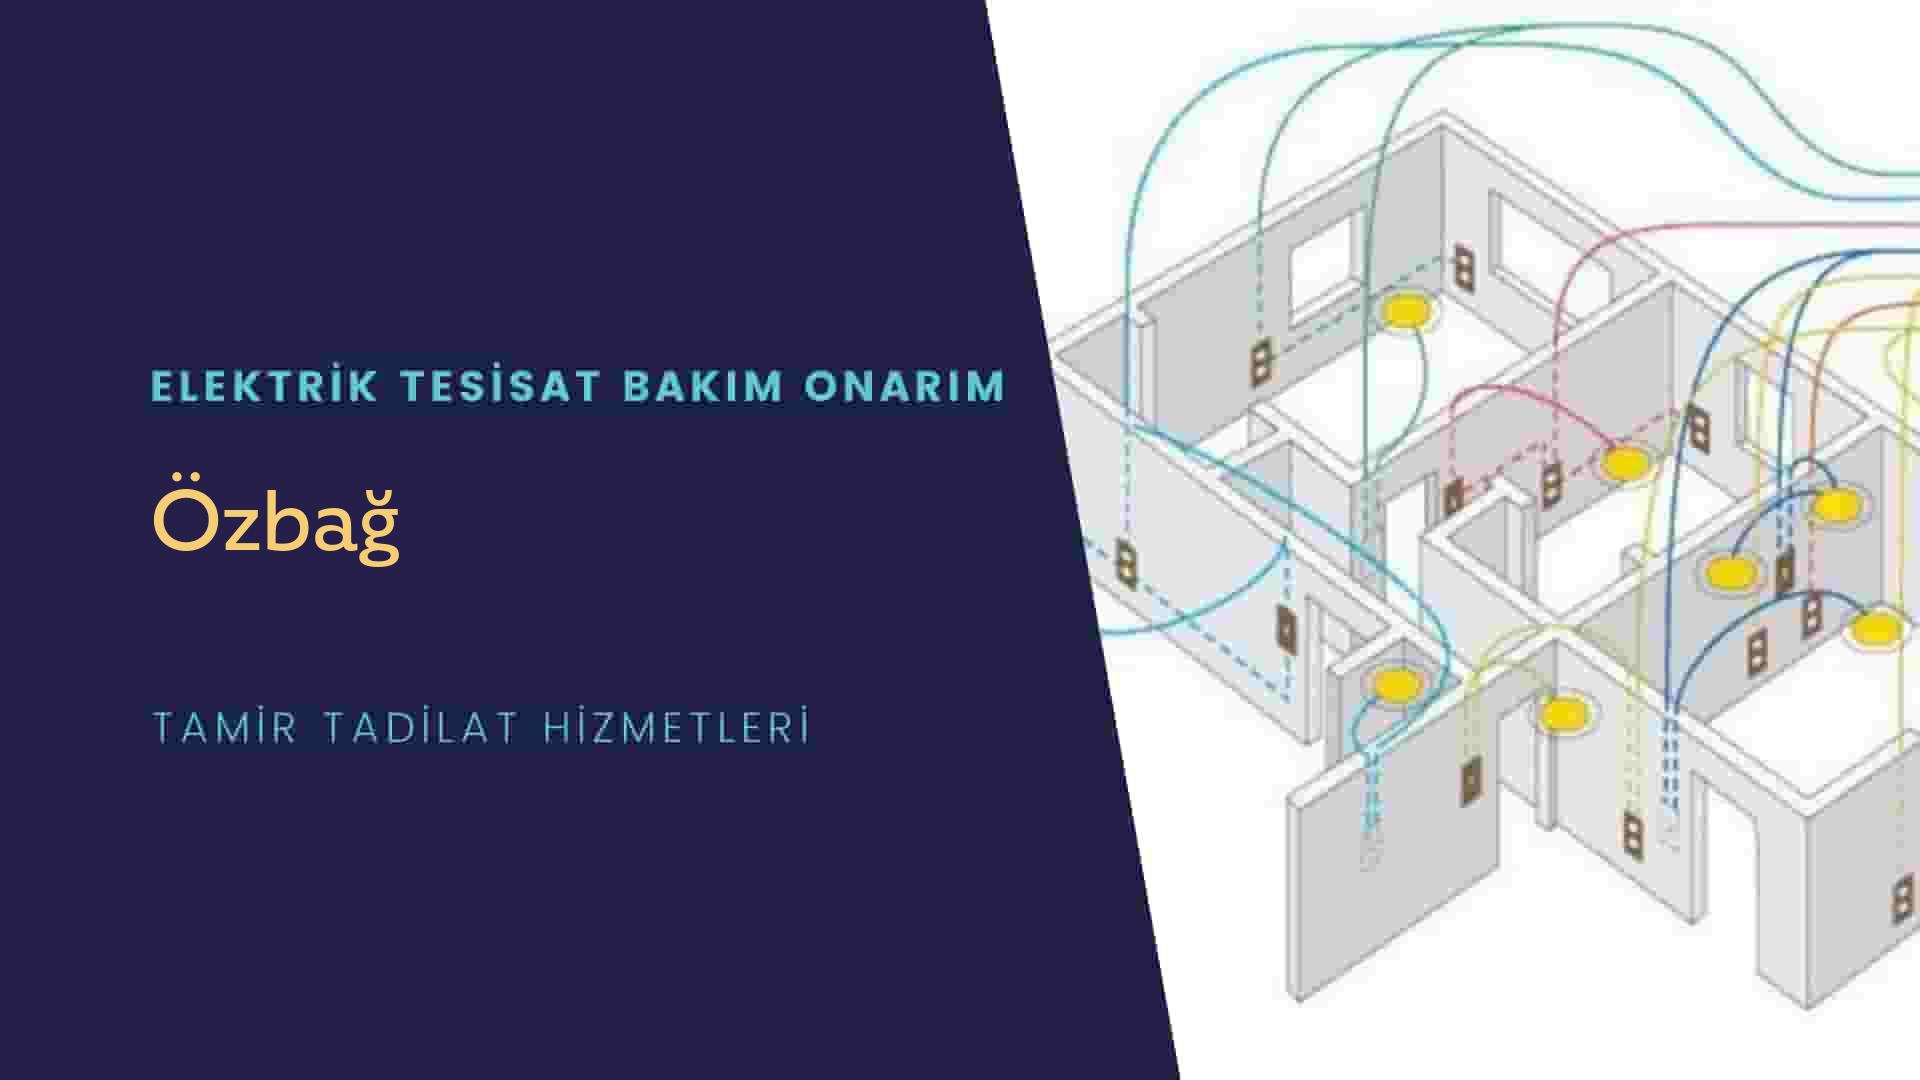 Özbağ'da elektrik tesisatı ustalarımı arıyorsunuz doğru adrestenizi Özbağ elektrik tesisatı ustalarımız 7/24 sizlere hizmet vermekten mutluluk duyar.